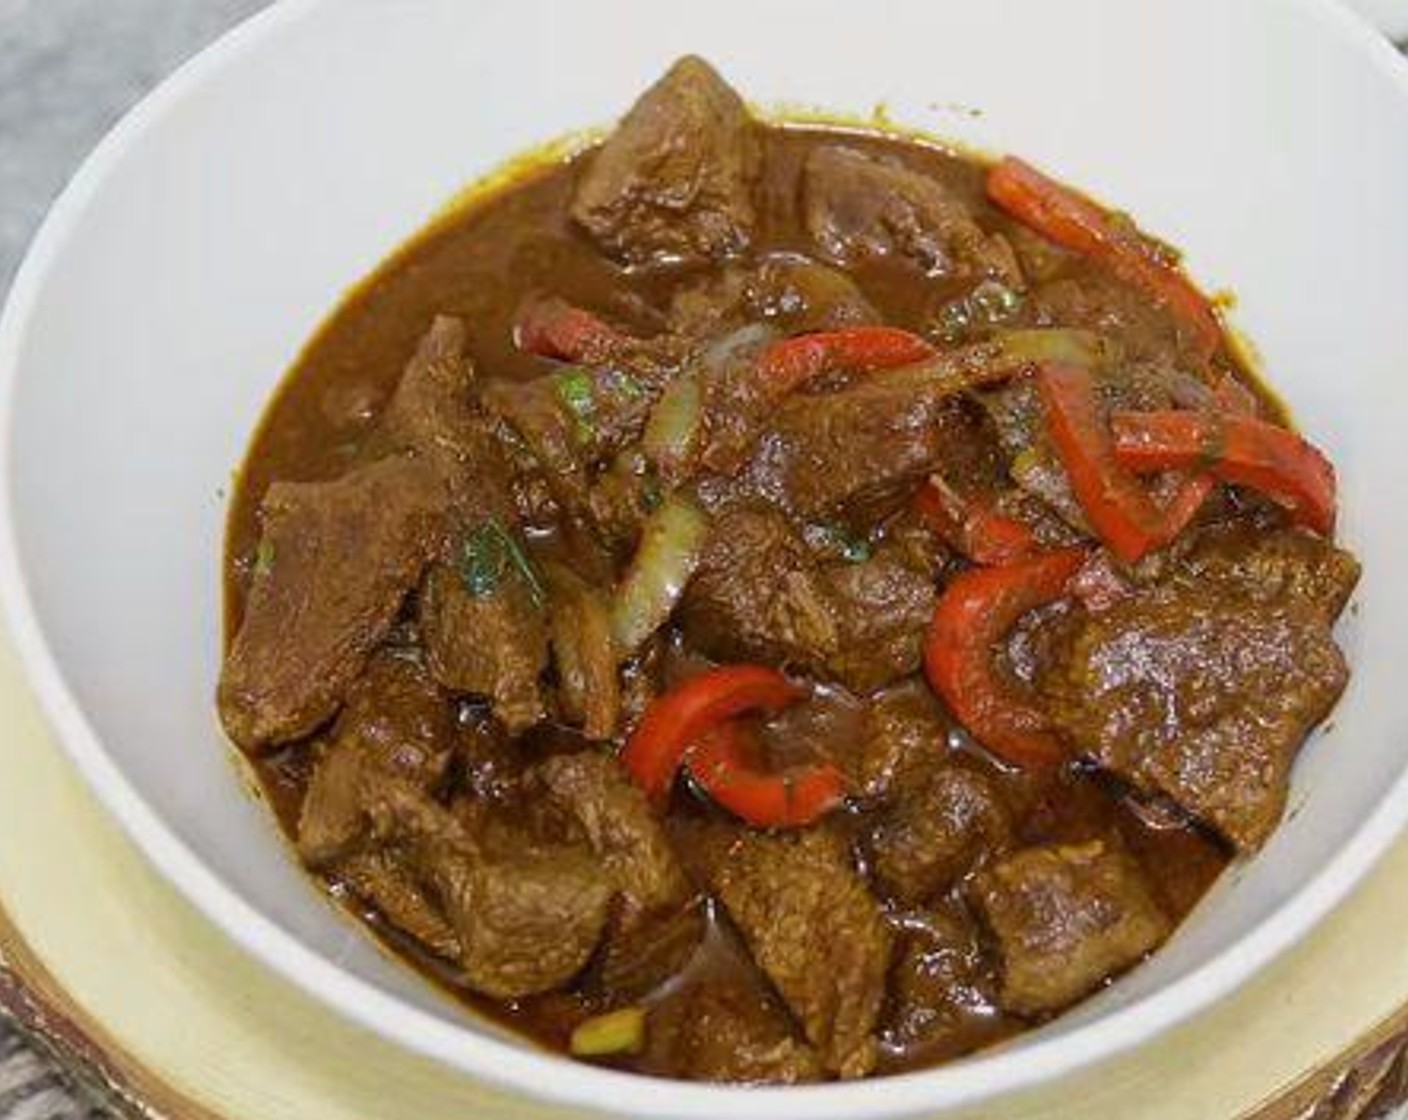 Carne De Res Guisada - Dominican Beef Stew